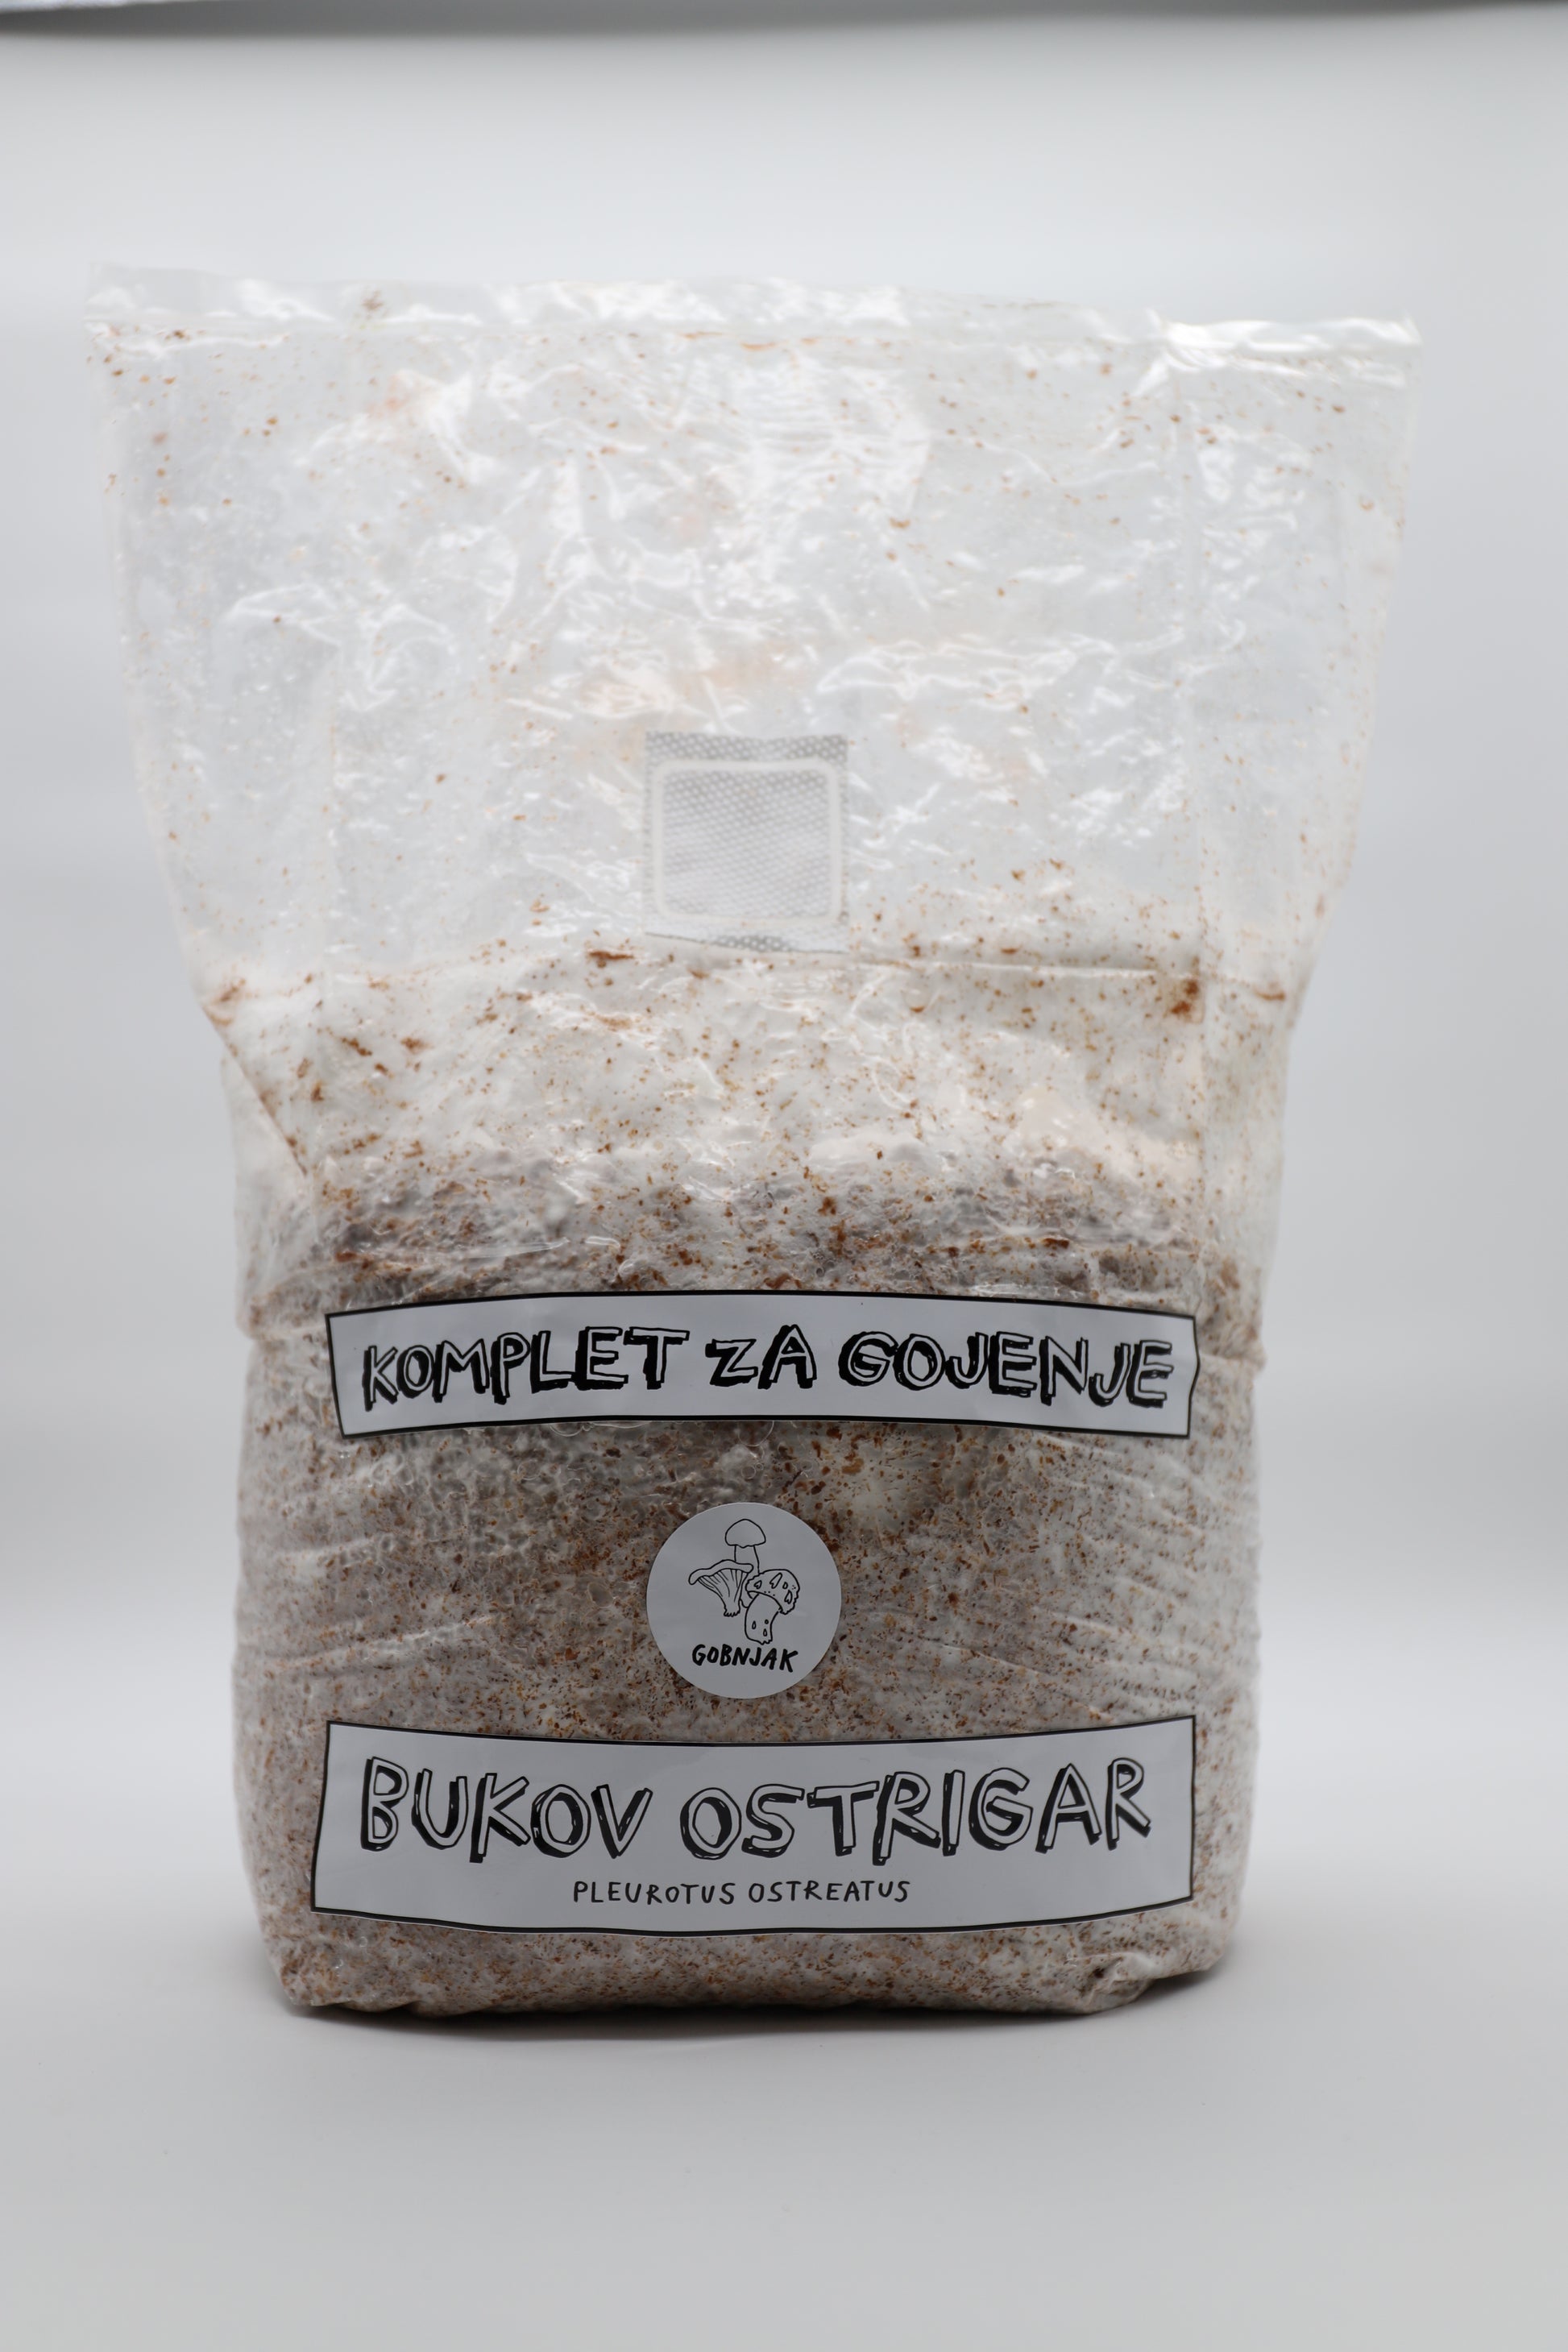 Komplet za gKomplet za gojenje gob - Bukov ostrigar - pleurotus ostreatus - Gobnjakojenje - Bukov ostrigar - Gobnjak